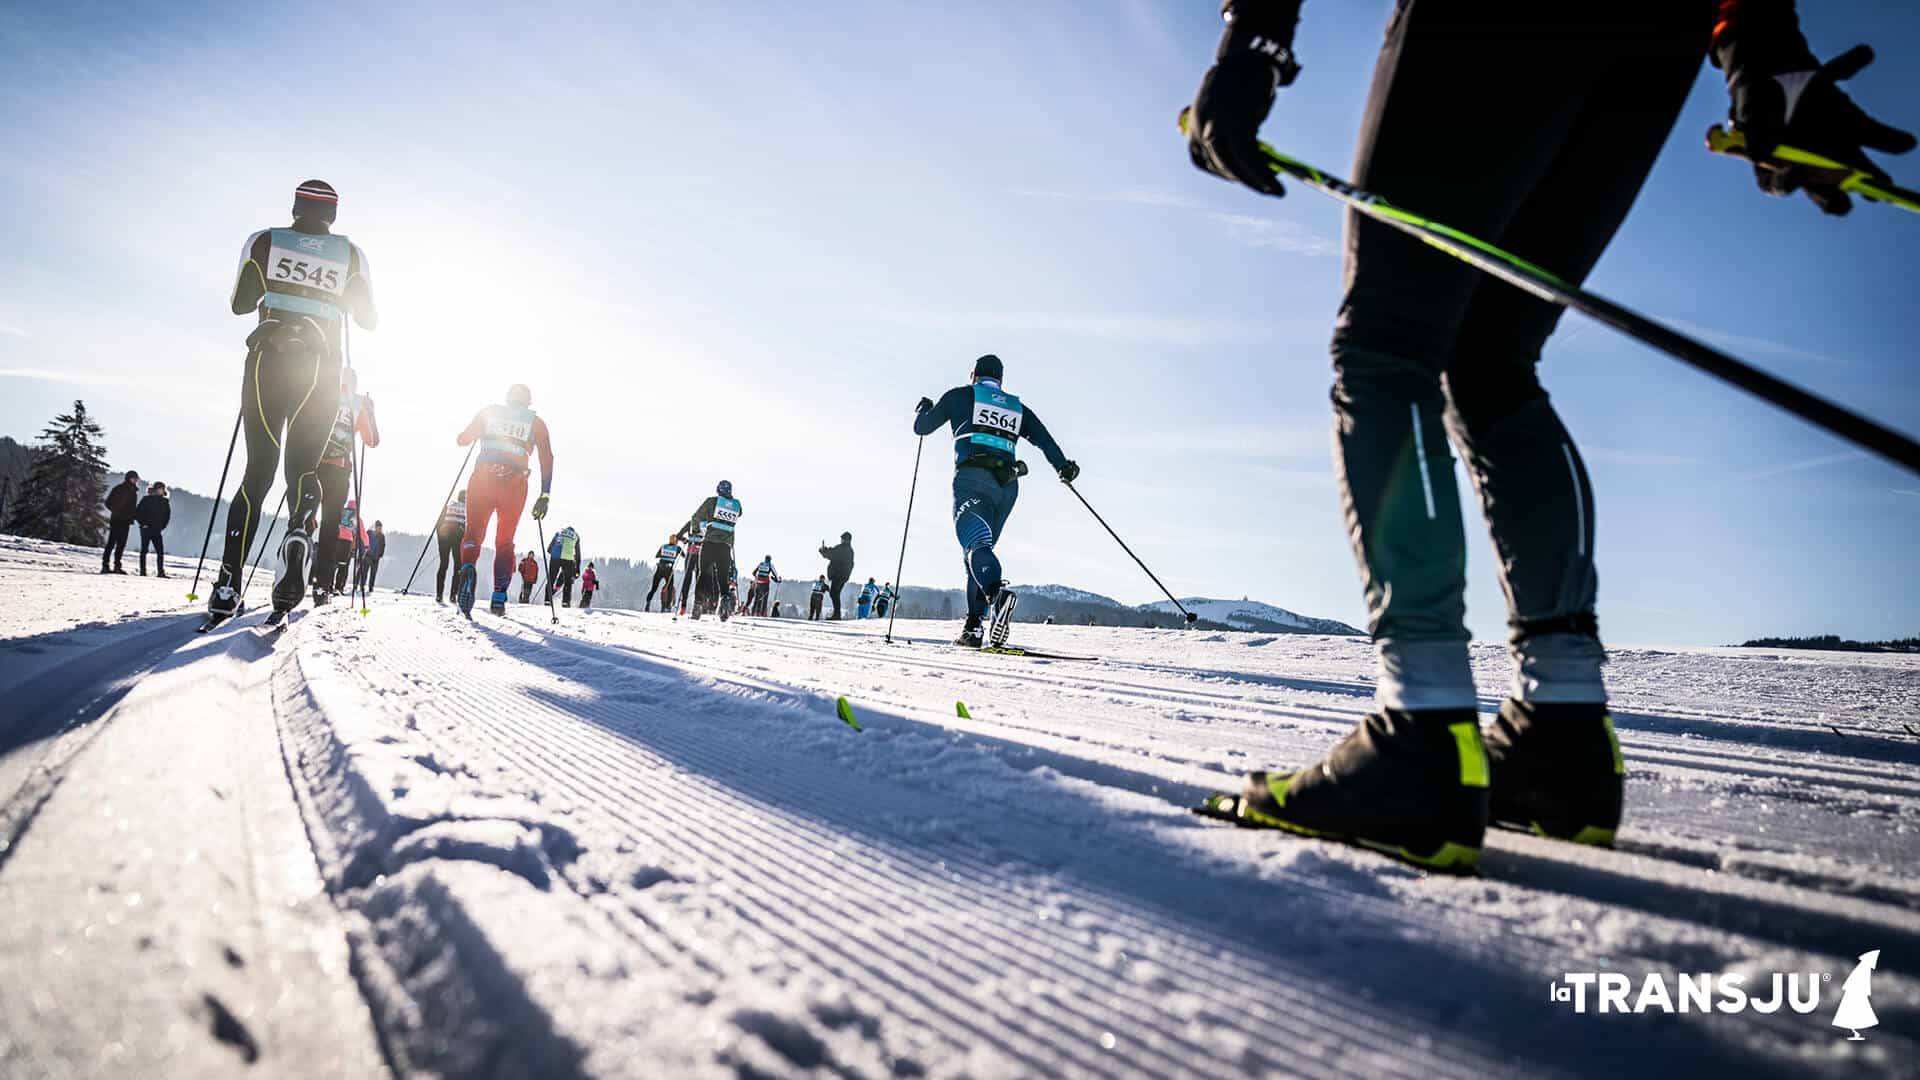 La Transju - Course de ski de fond classique et skating en France